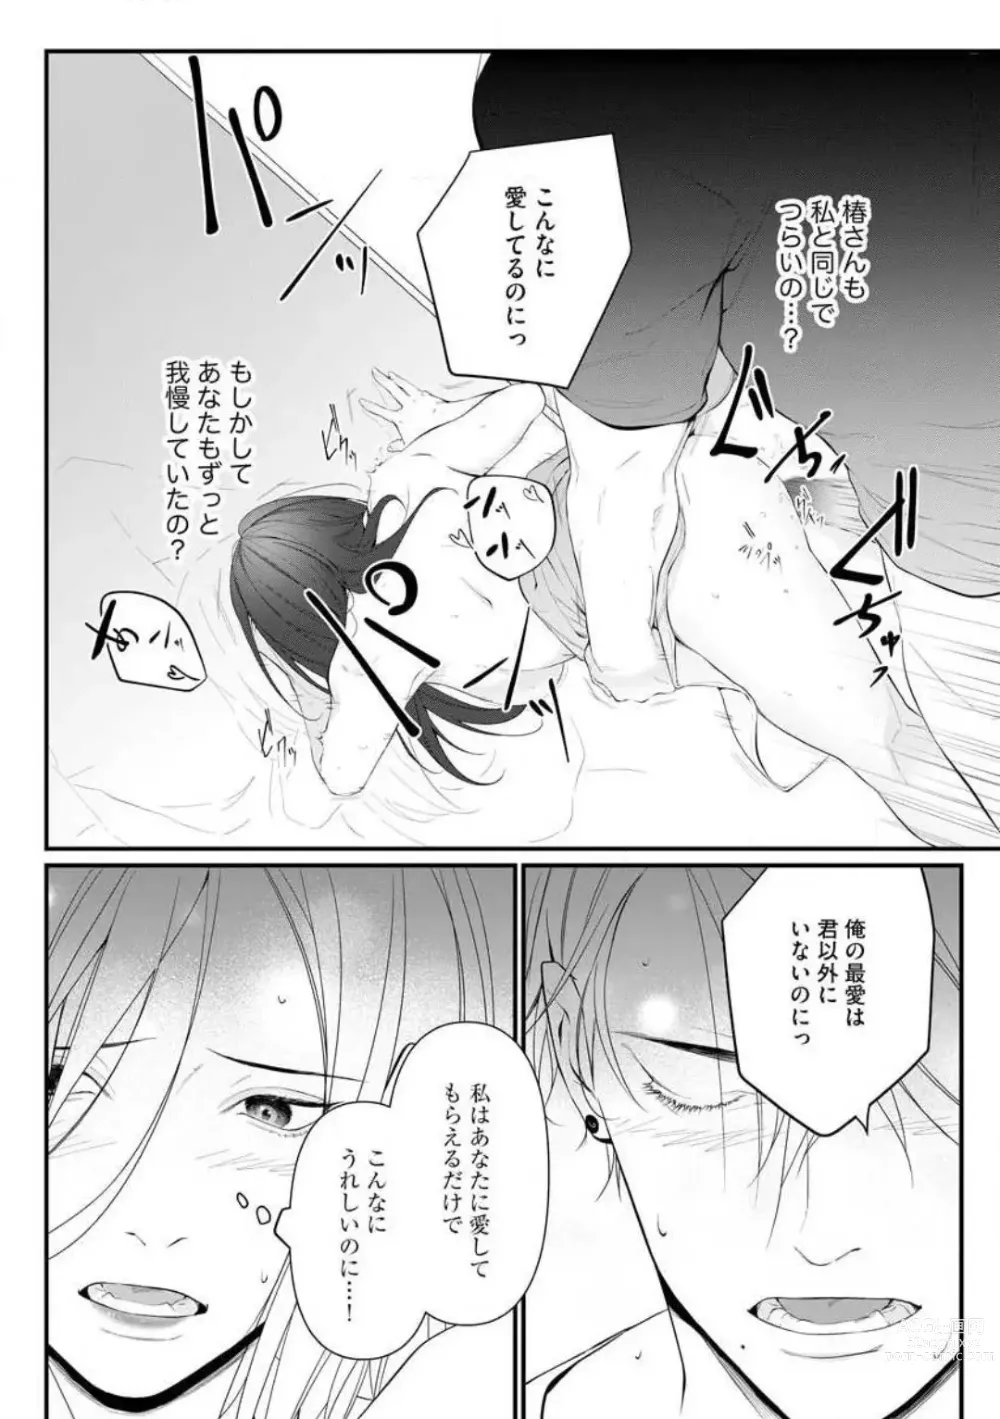 Page 186 of manga Risei o Sutete, Shoukei o Daku 1-6